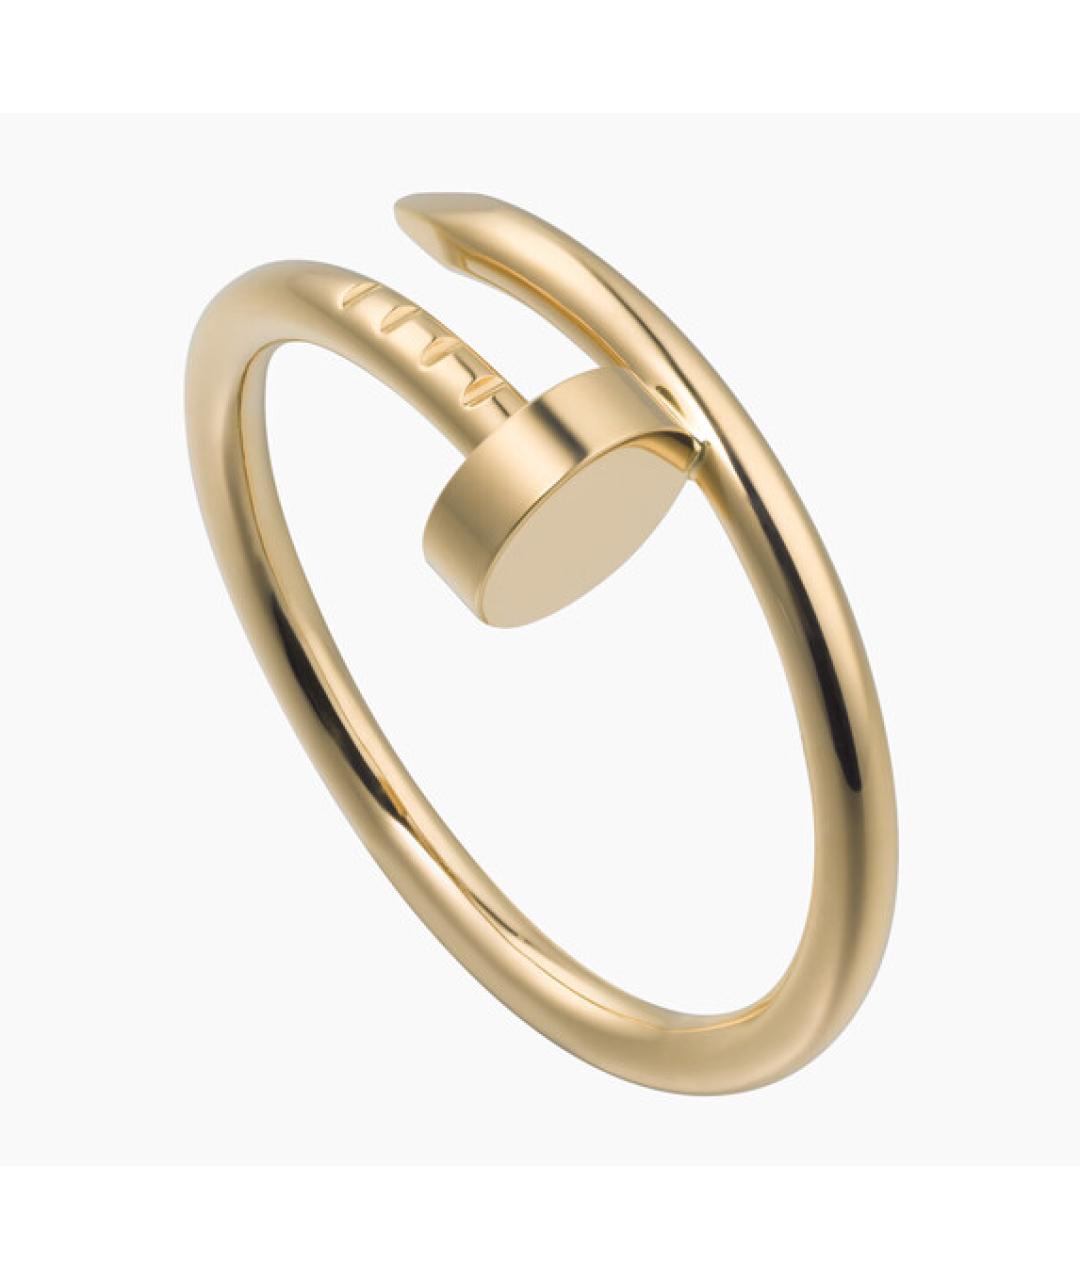 CARTIER Золотое кольцо из желтого золота, фото 6